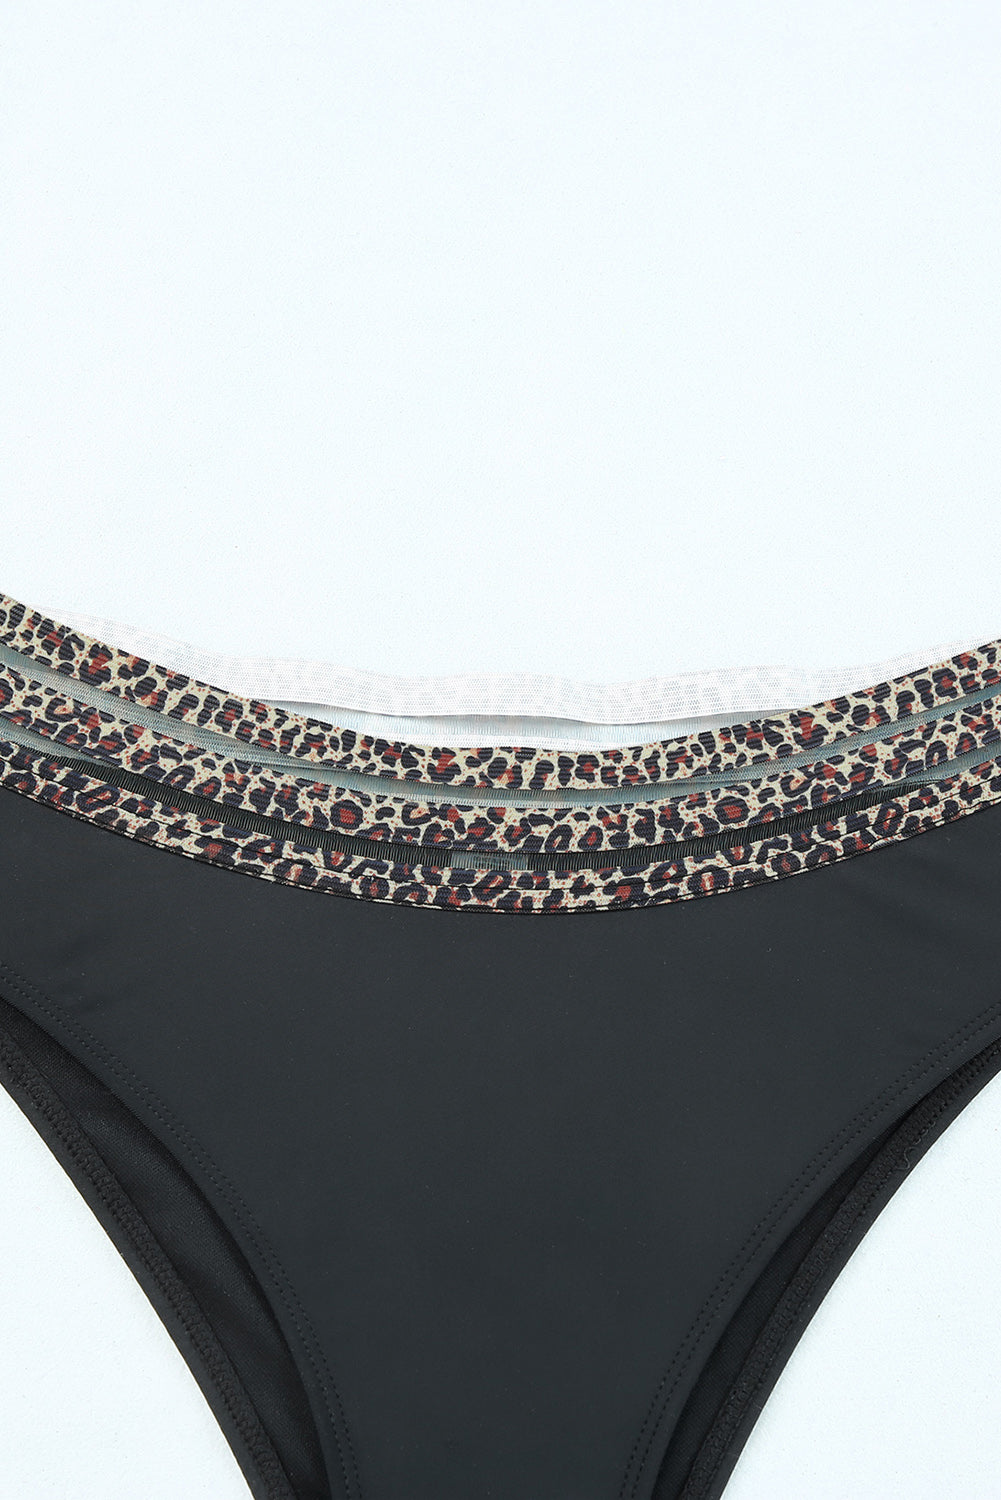 Black Rose Leopard Mesh Trim 2pcs Bikini Swimsuit